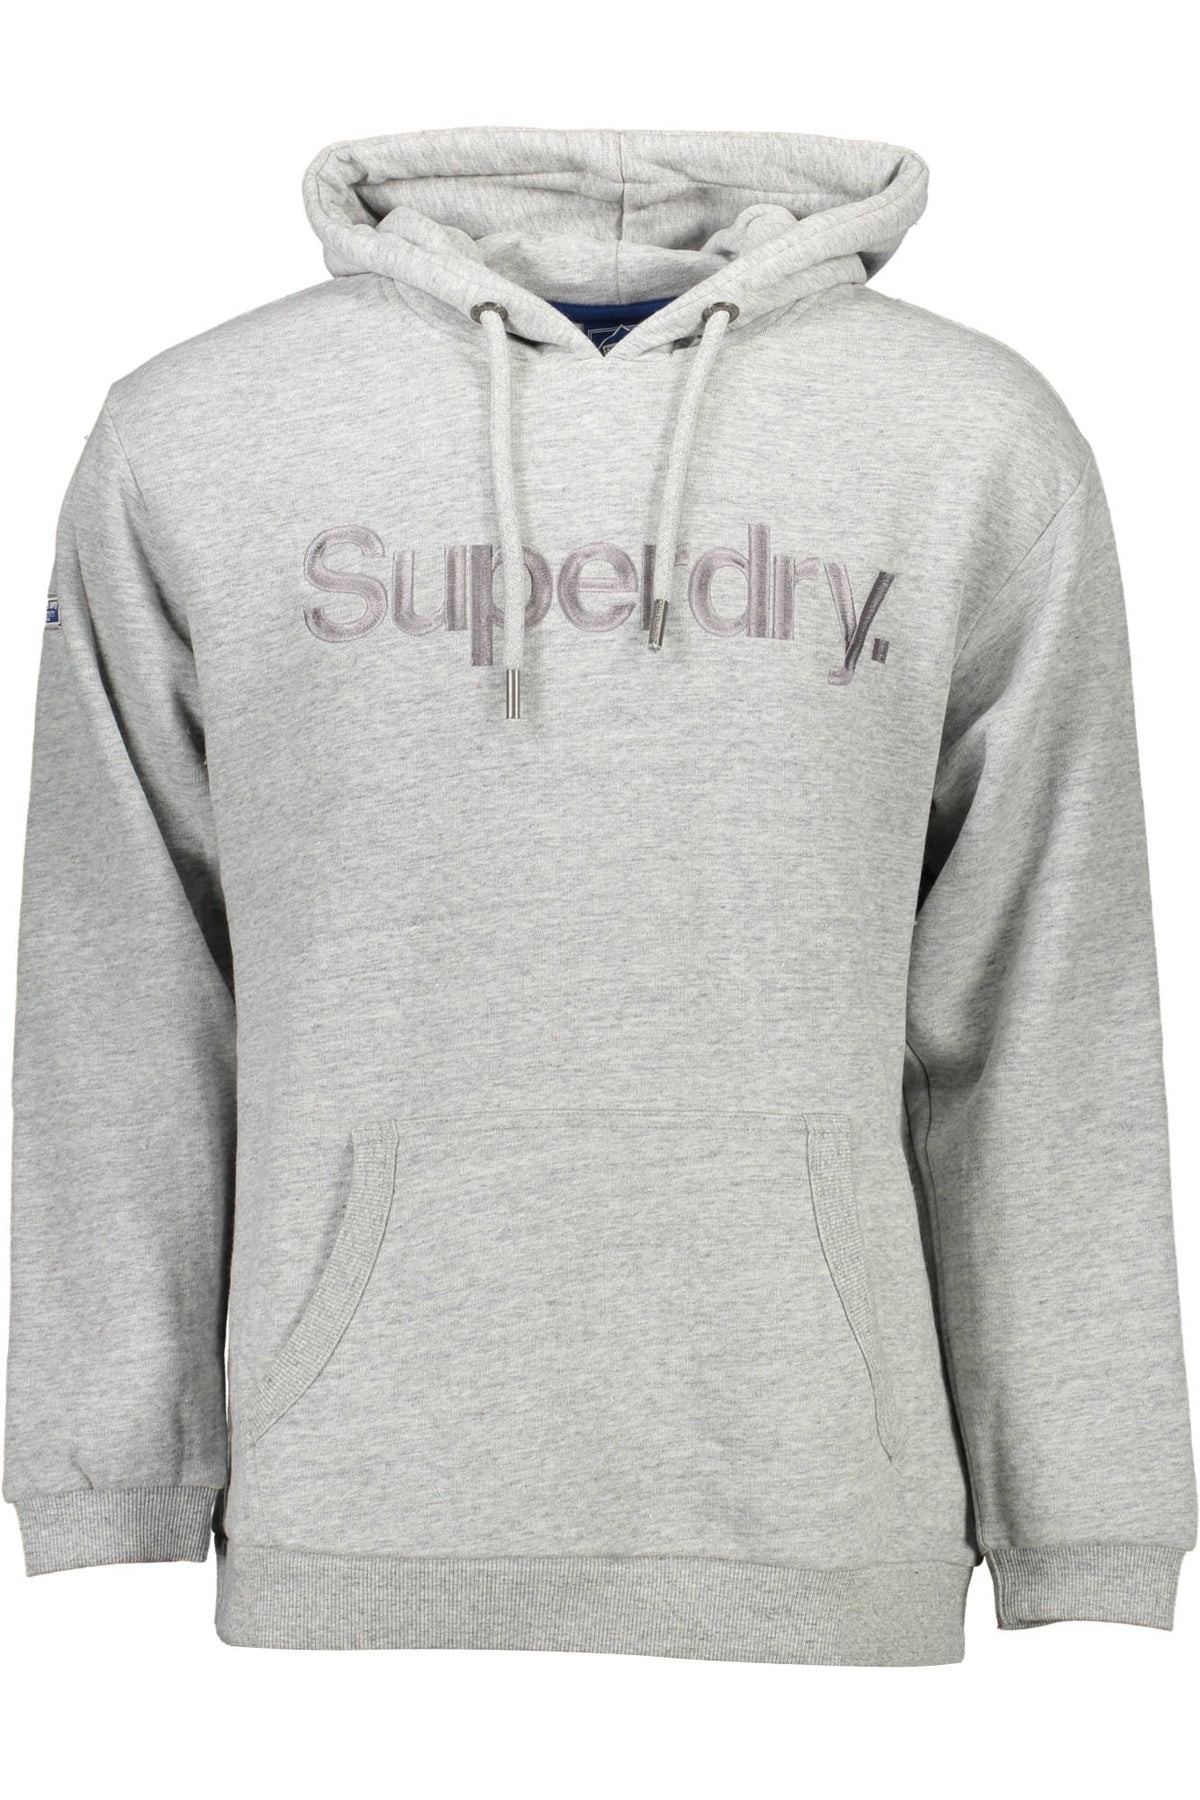 SUPERDRY Herren Pullover Sweatshirt Shirt Oberteil mit Kapuze, langärmlig